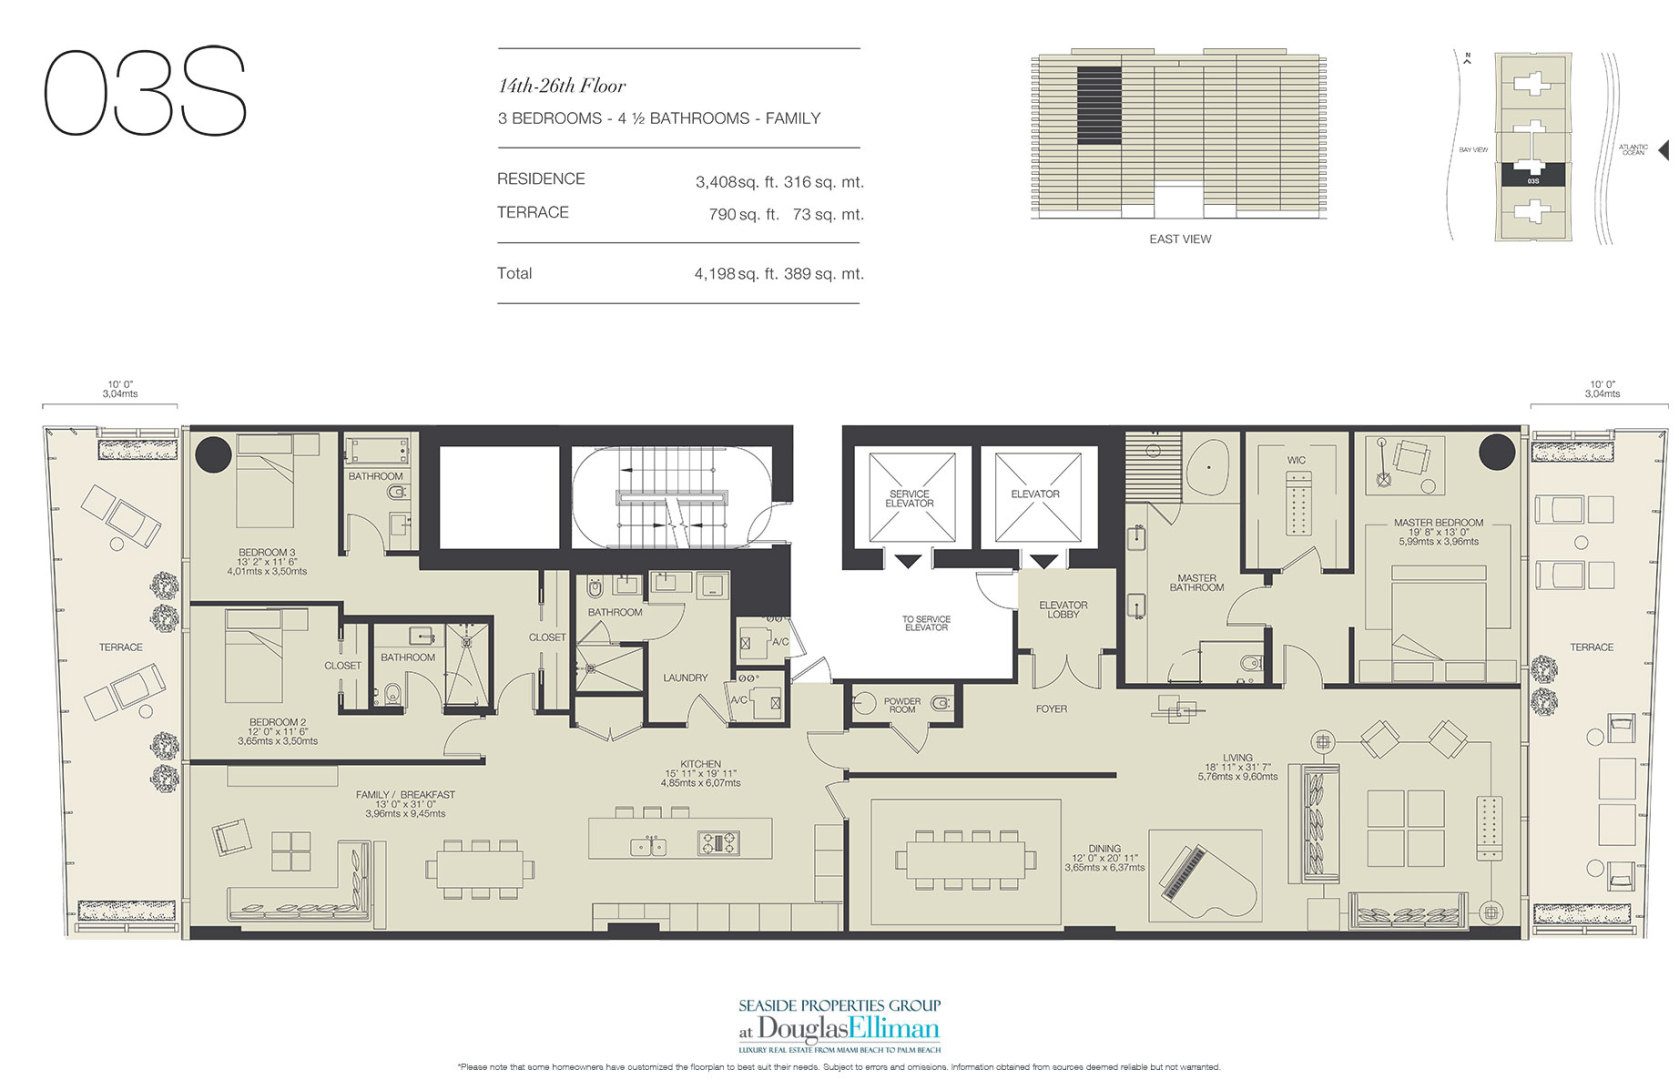 The 03S Floorplan for Oceana Bal Harbour, Luxury Oceanfront Condos in Bal Harbour, Florida 33154